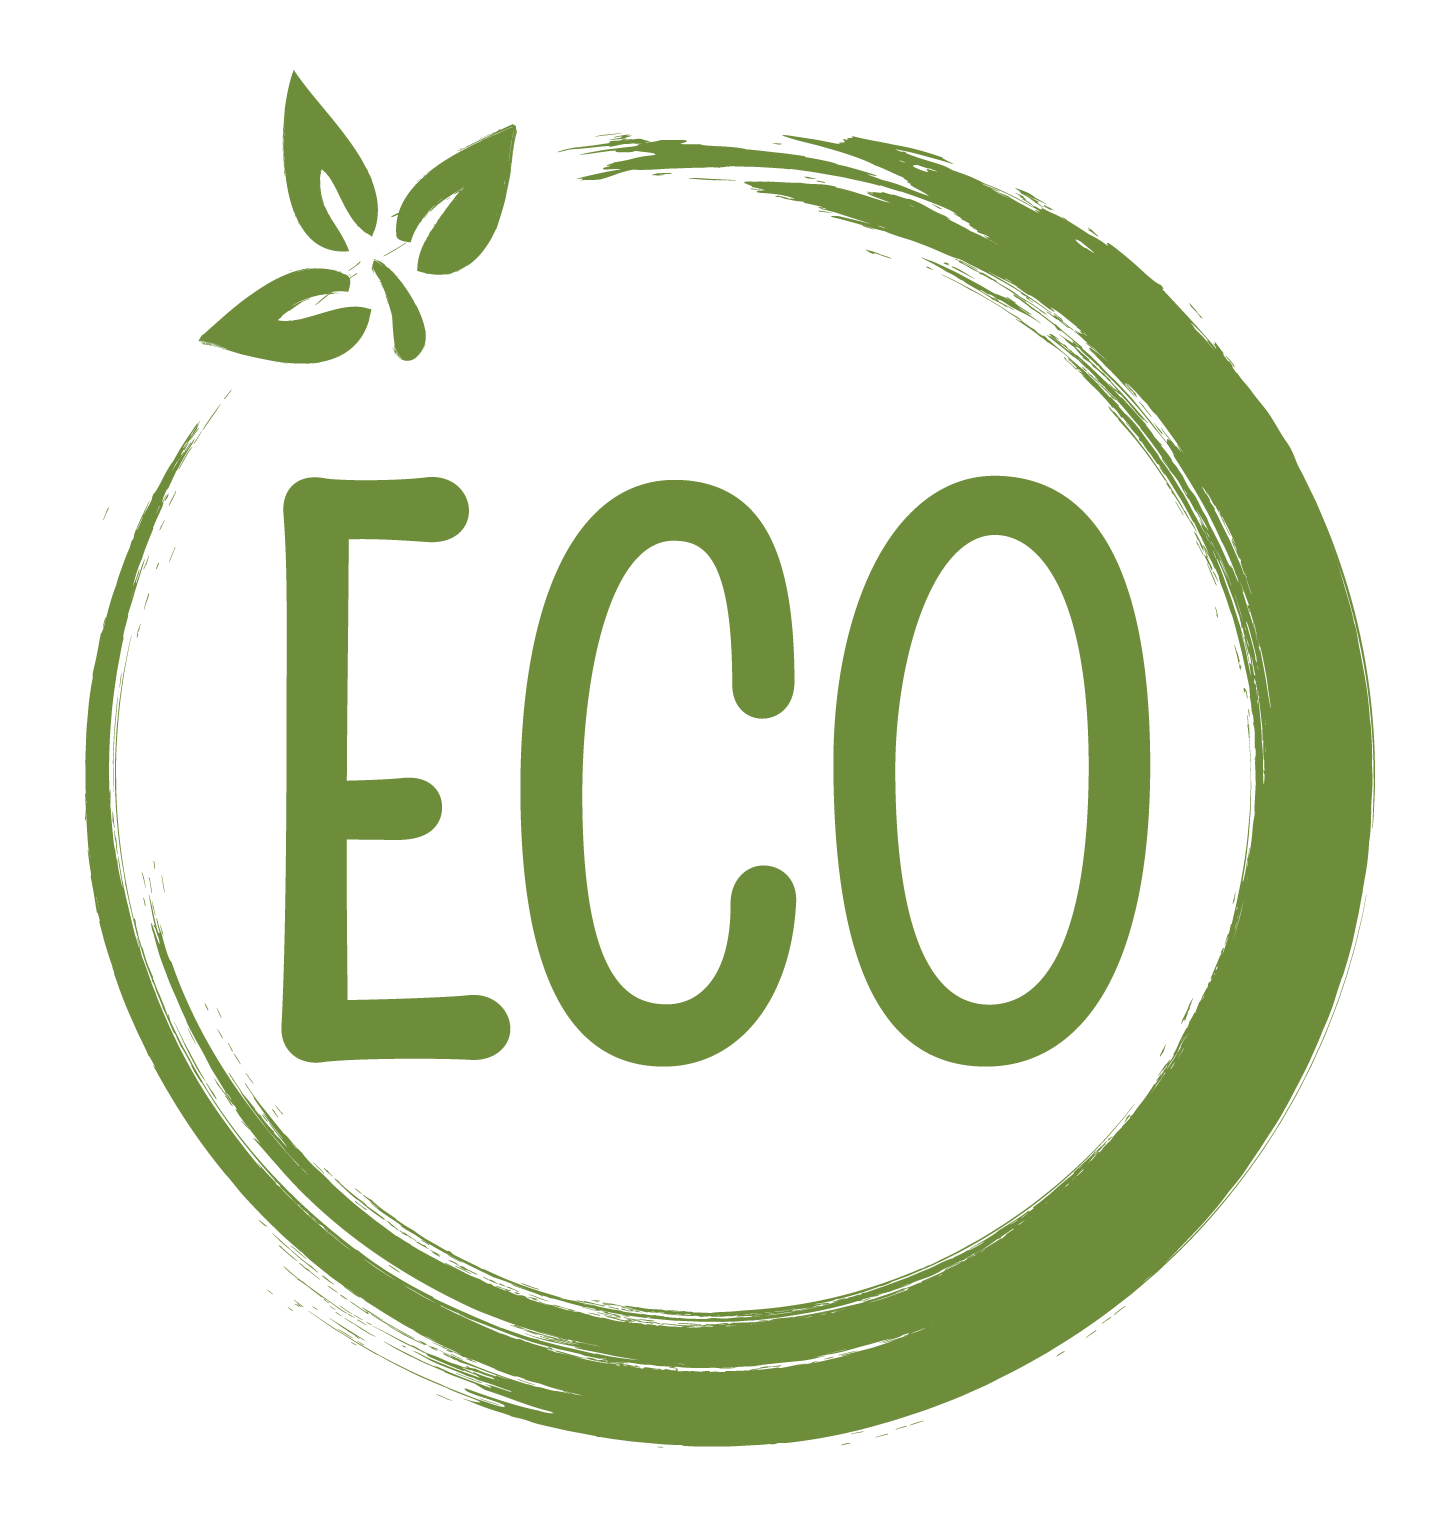 Eco natural